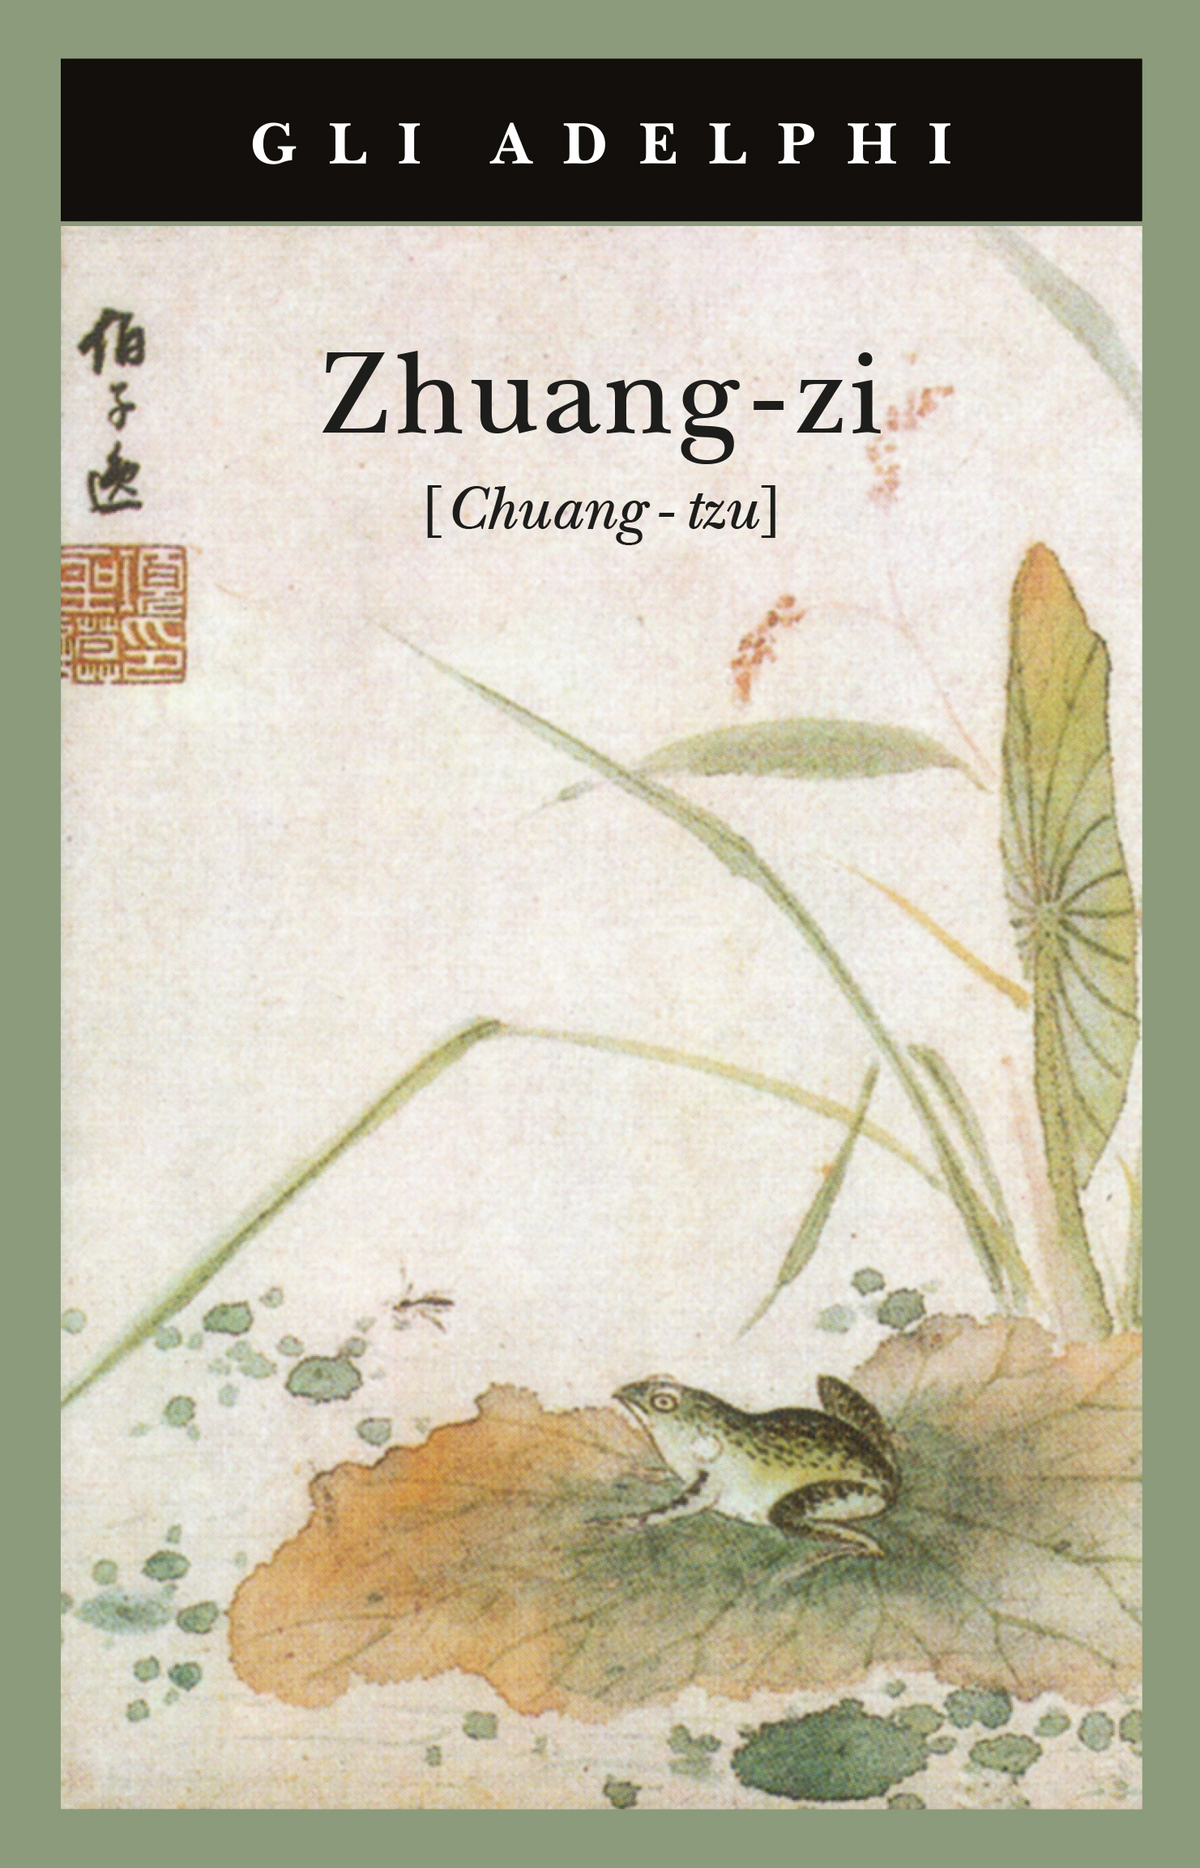 chuang-tzu Gli Adelphi Zhuang-zi 1992 